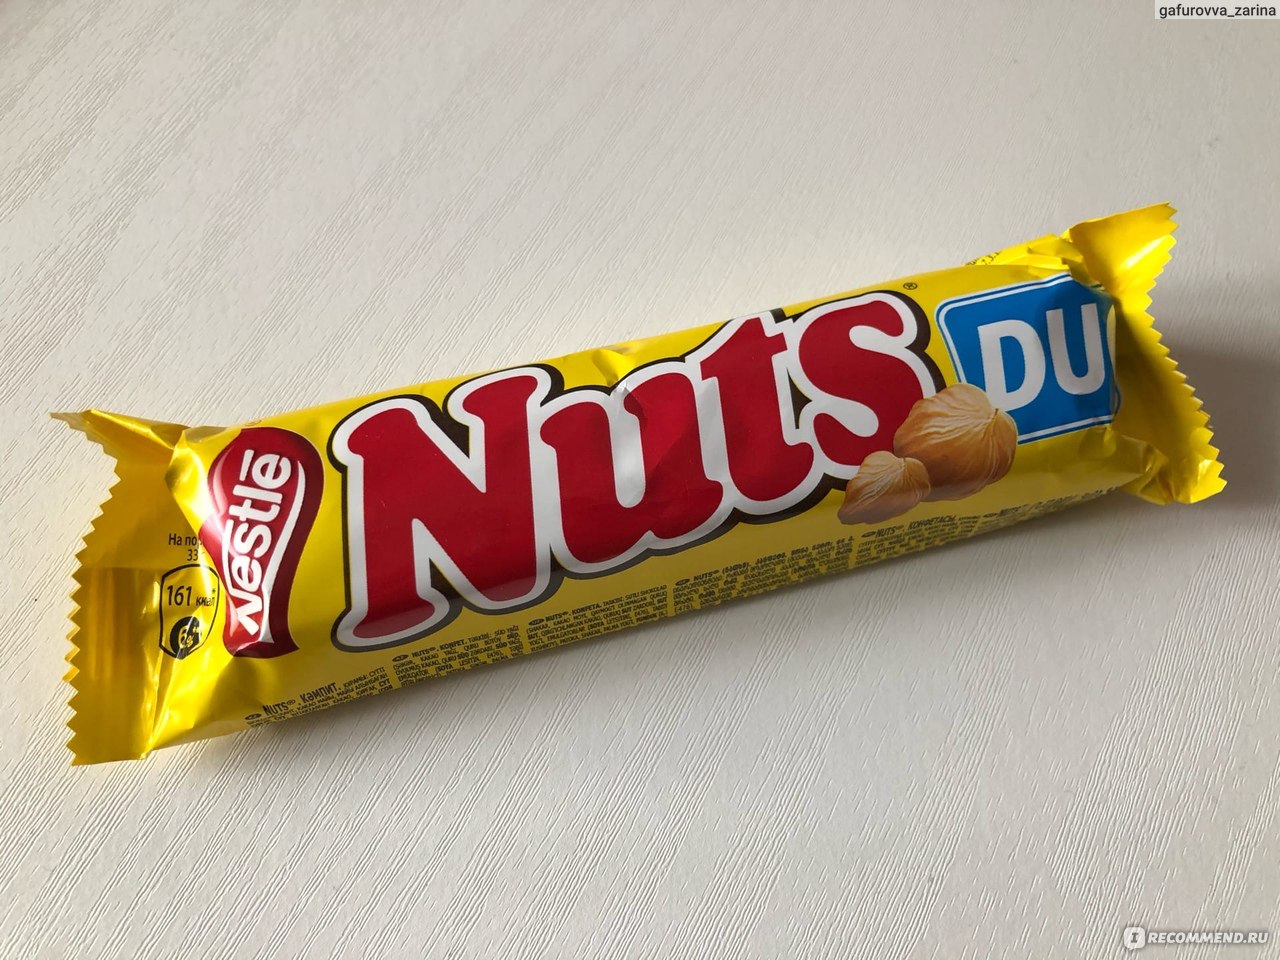 Батончик нат. Батончик Нестле натс. Шоколад натс дуо. Шоколадный батончик натс. Nestle Nuts Duo.